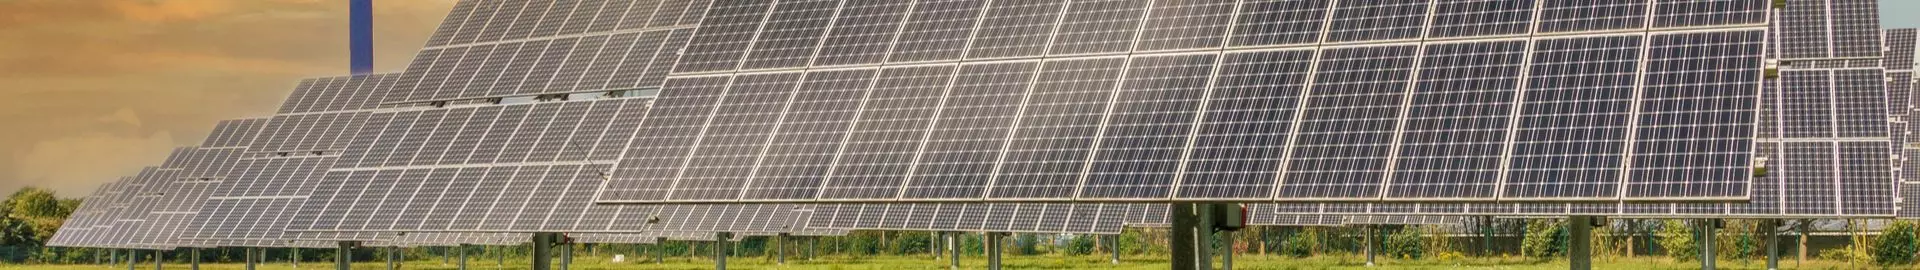 Solar PV Inverter Market